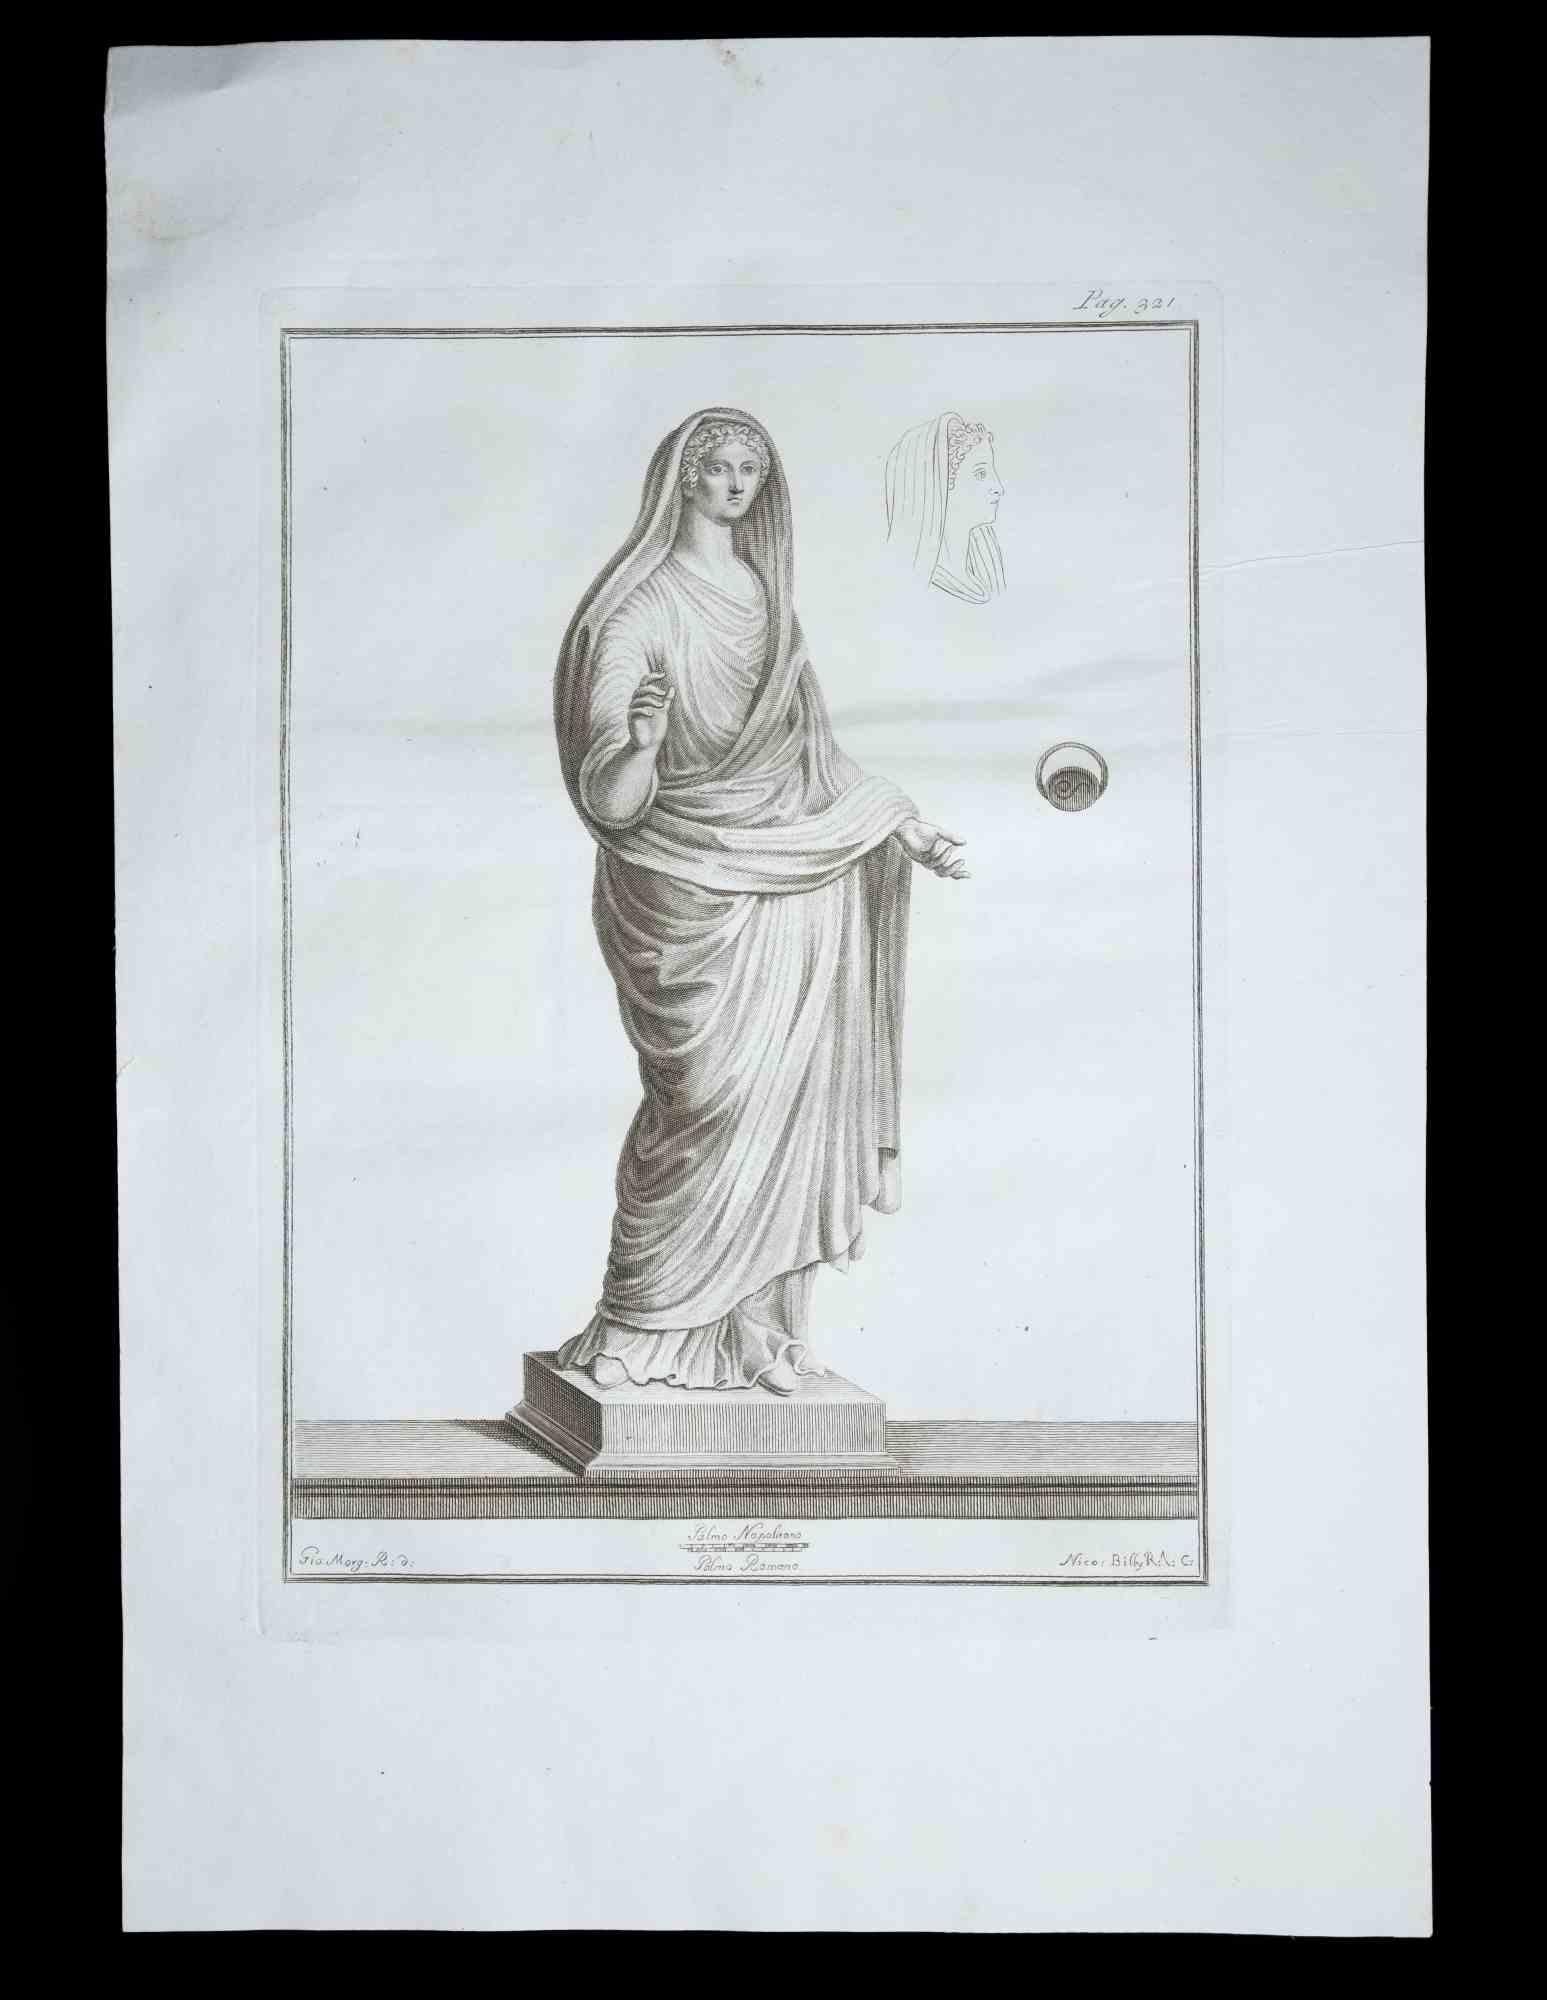 Statue romaine antique, de la série "Antiquités d'Herculanum", est une gravure originale sur papier réalisée par Giovanni Morghen au XVIIIe siècle.

Signé sur la plaque en bas à gauche.

Bon état avec de légères rousseurs.

La gravure appartient à